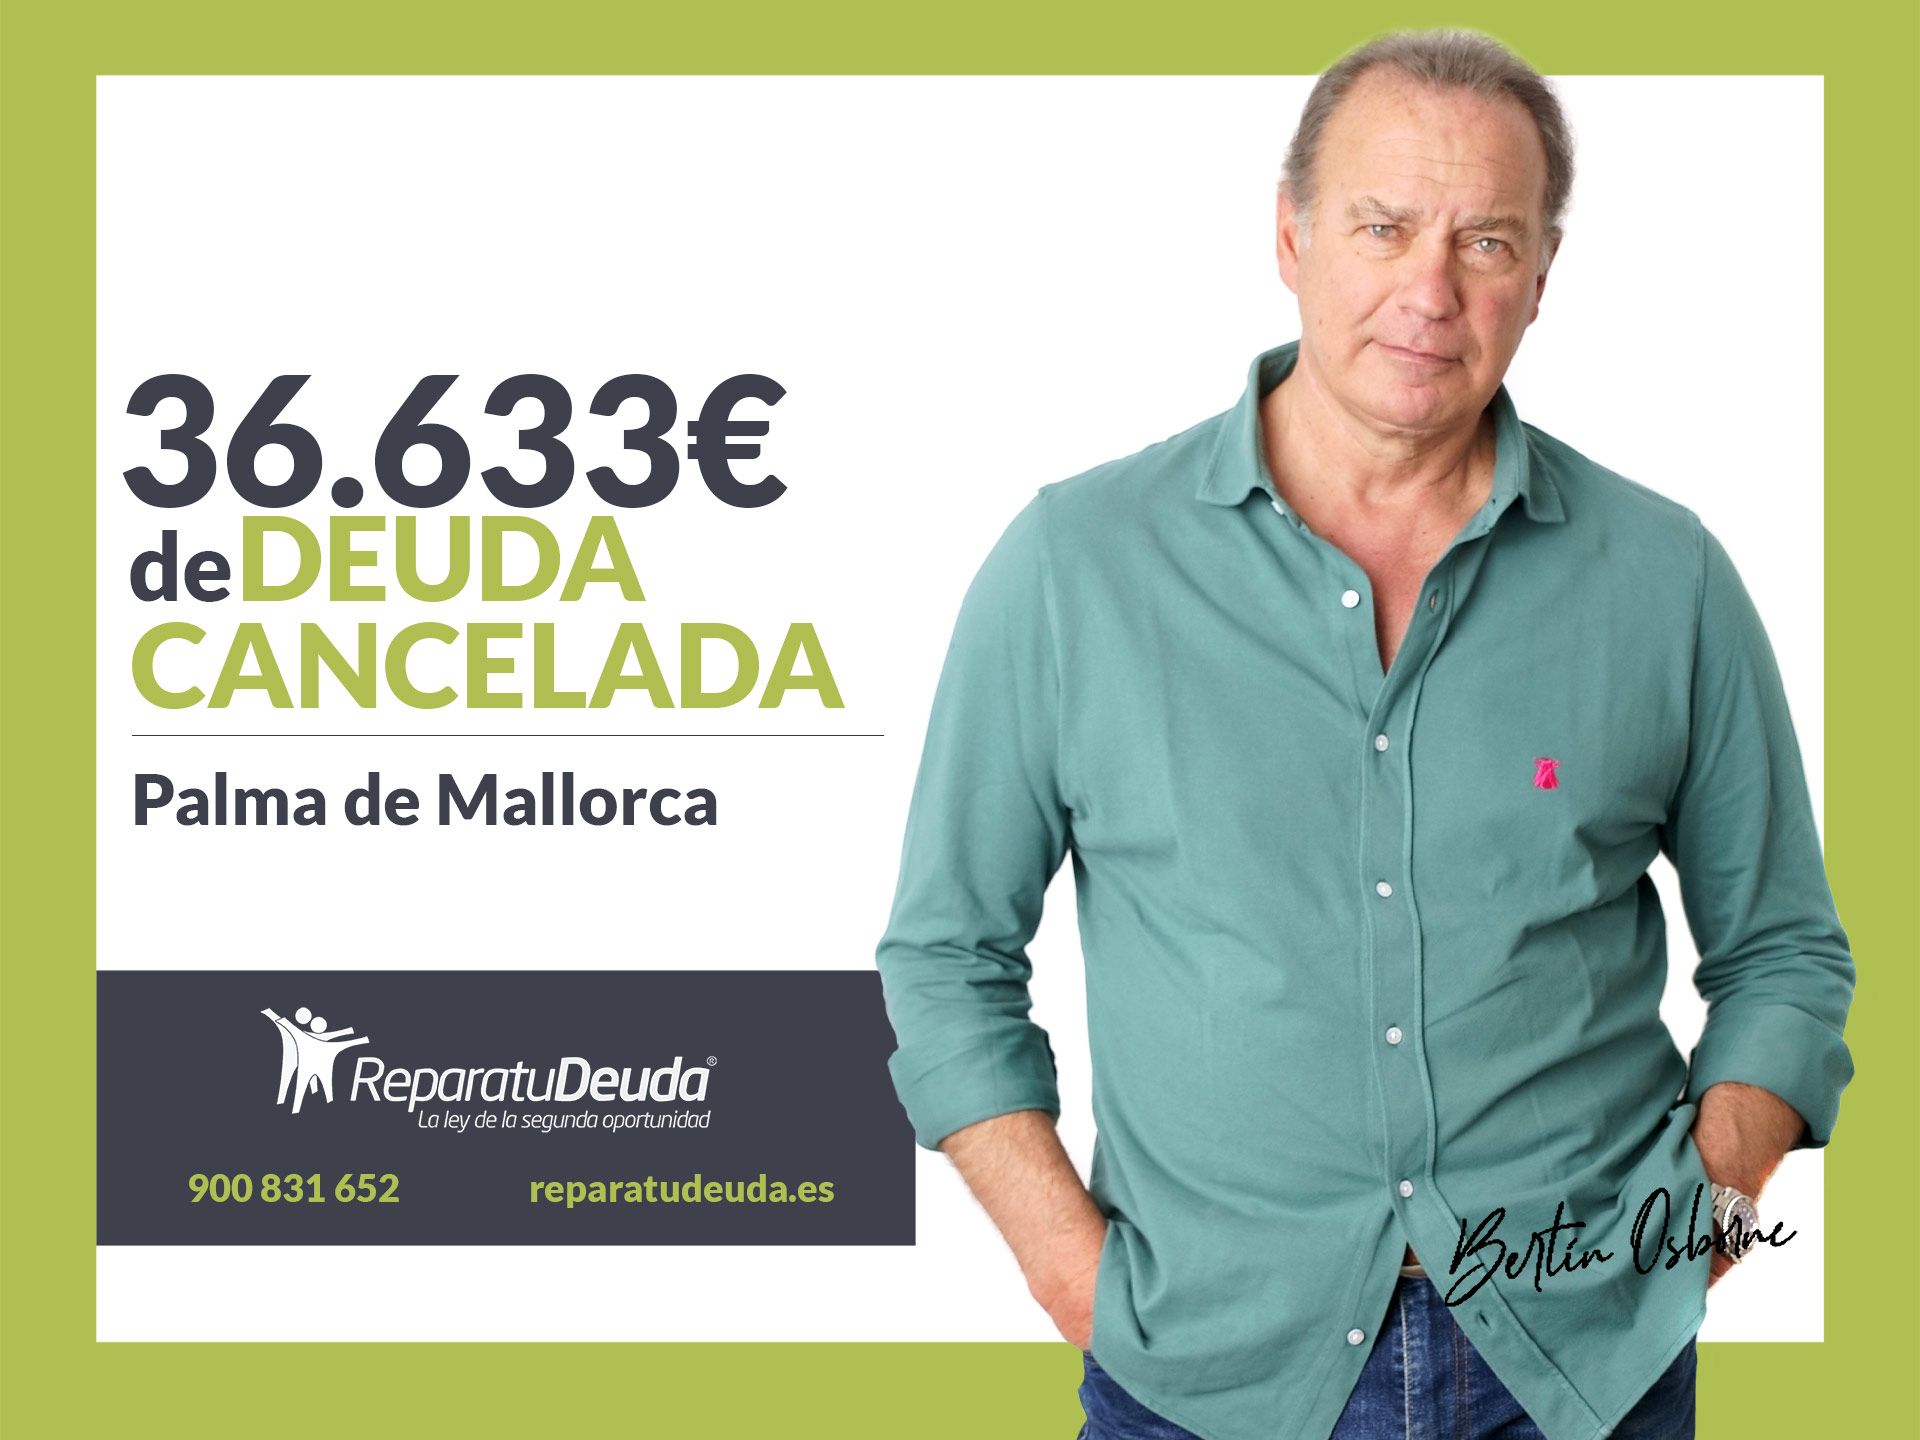 Repara tu Deuda Abogados cancela 36.633? en Palma de Mallorca (Baleares) con la Ley de Segunda Oportunidad